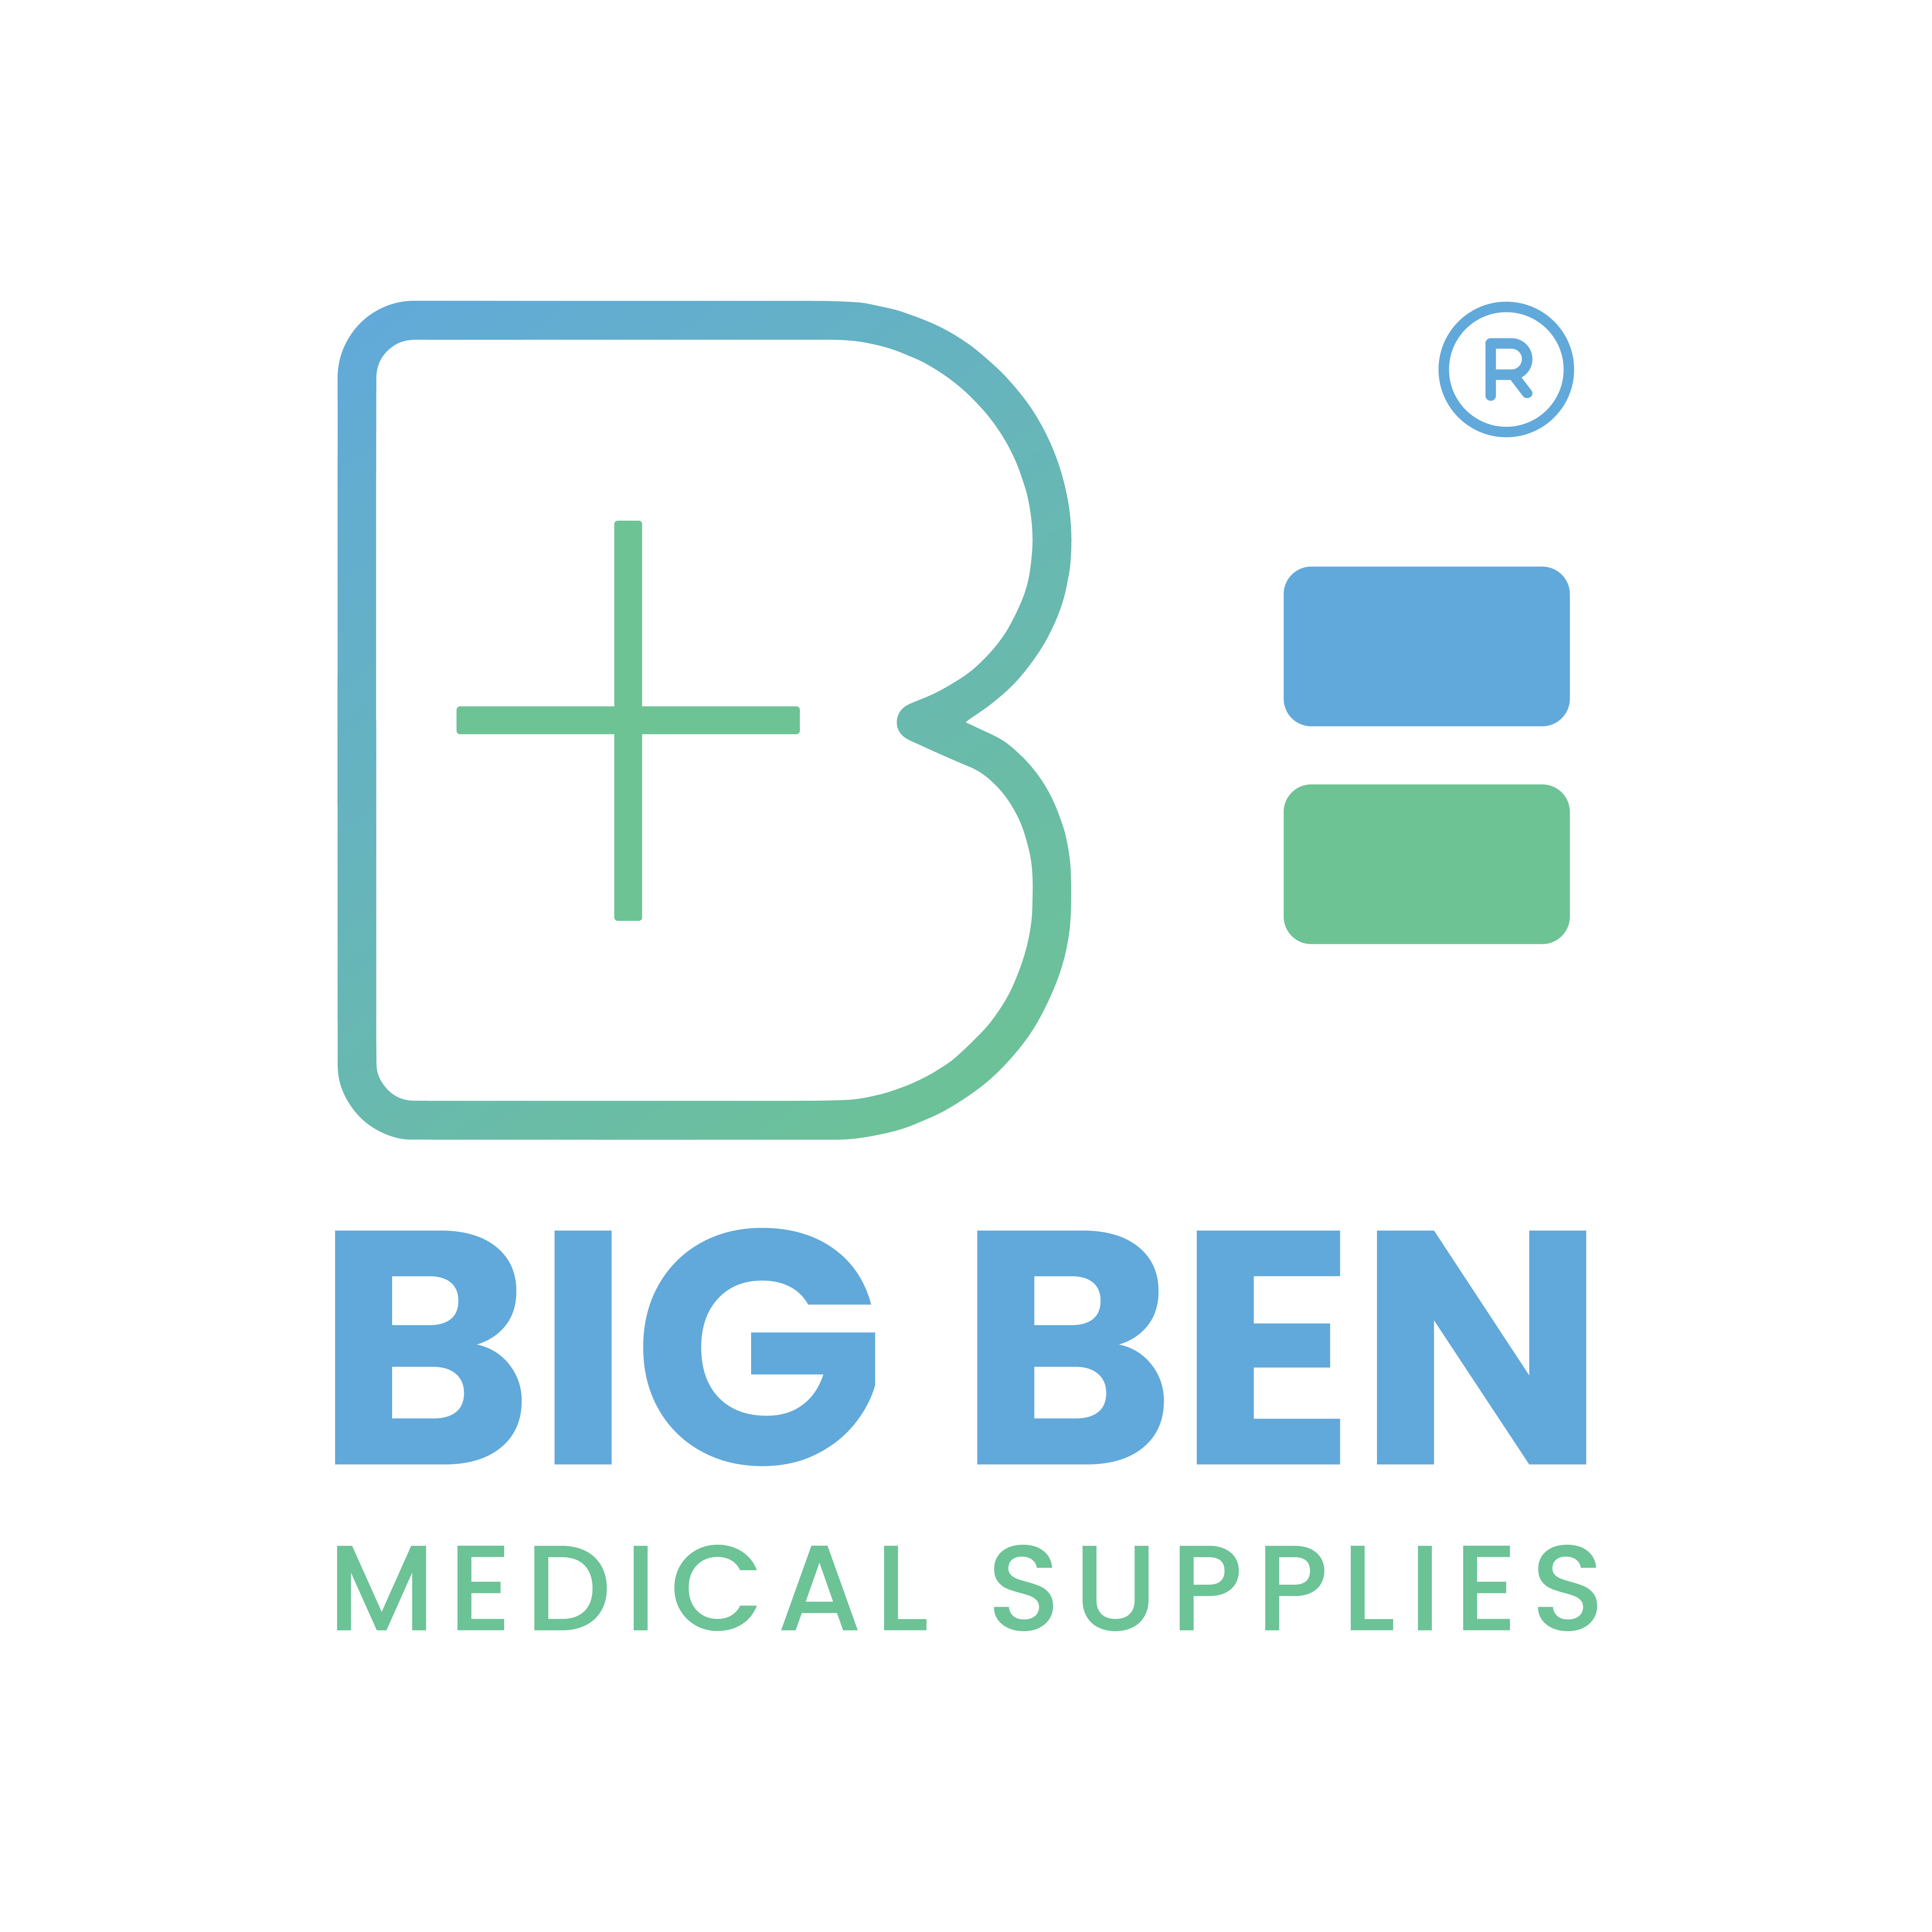 Bigben Medical Supplies